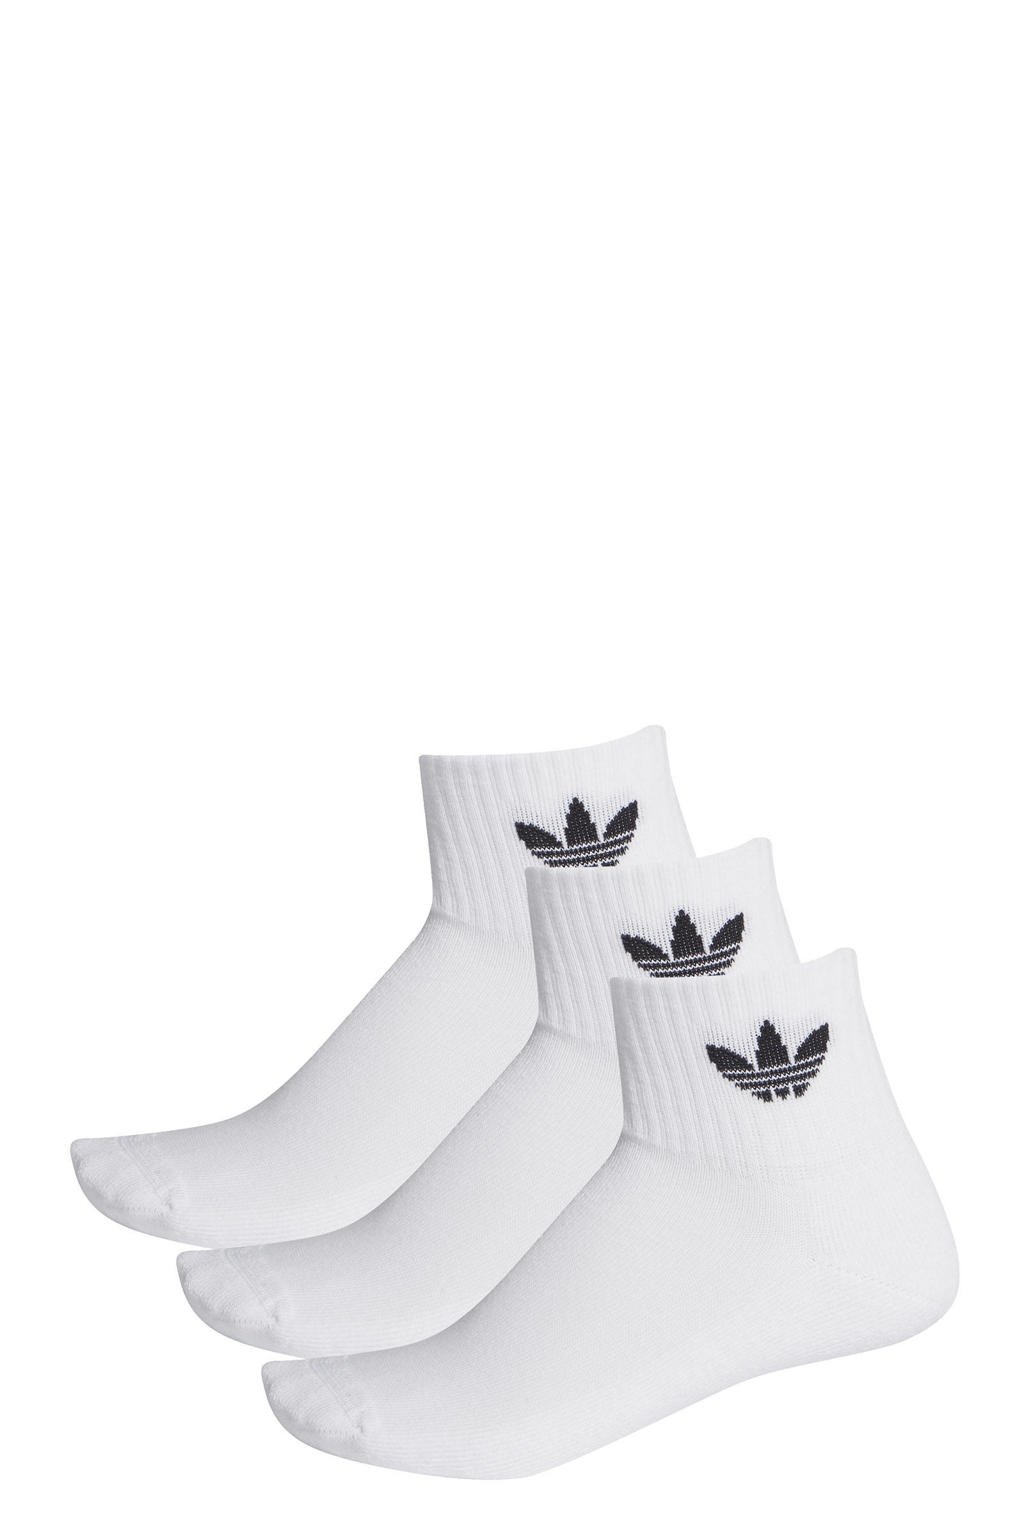 adidas Originals   Adicolor sokken set van 3 wit/zwart